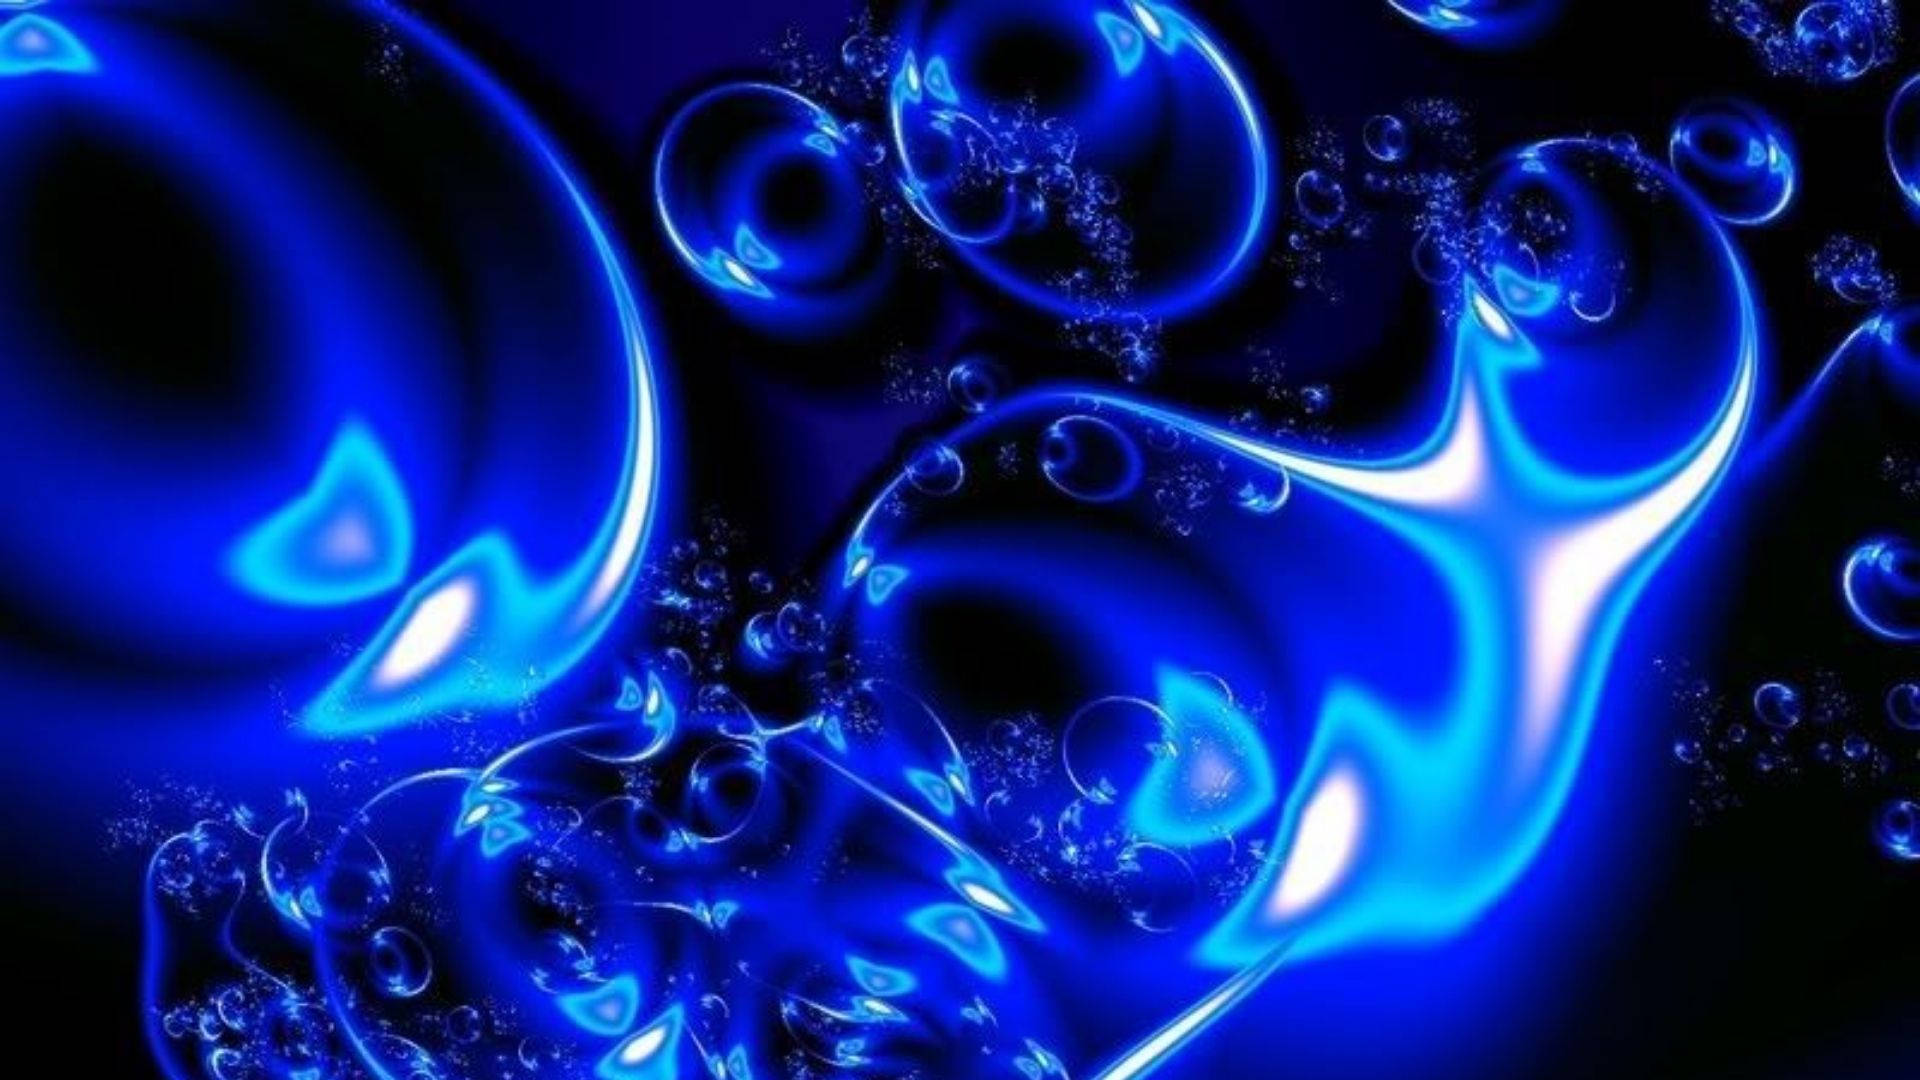 Download Neon Blue Water Wallpaper 